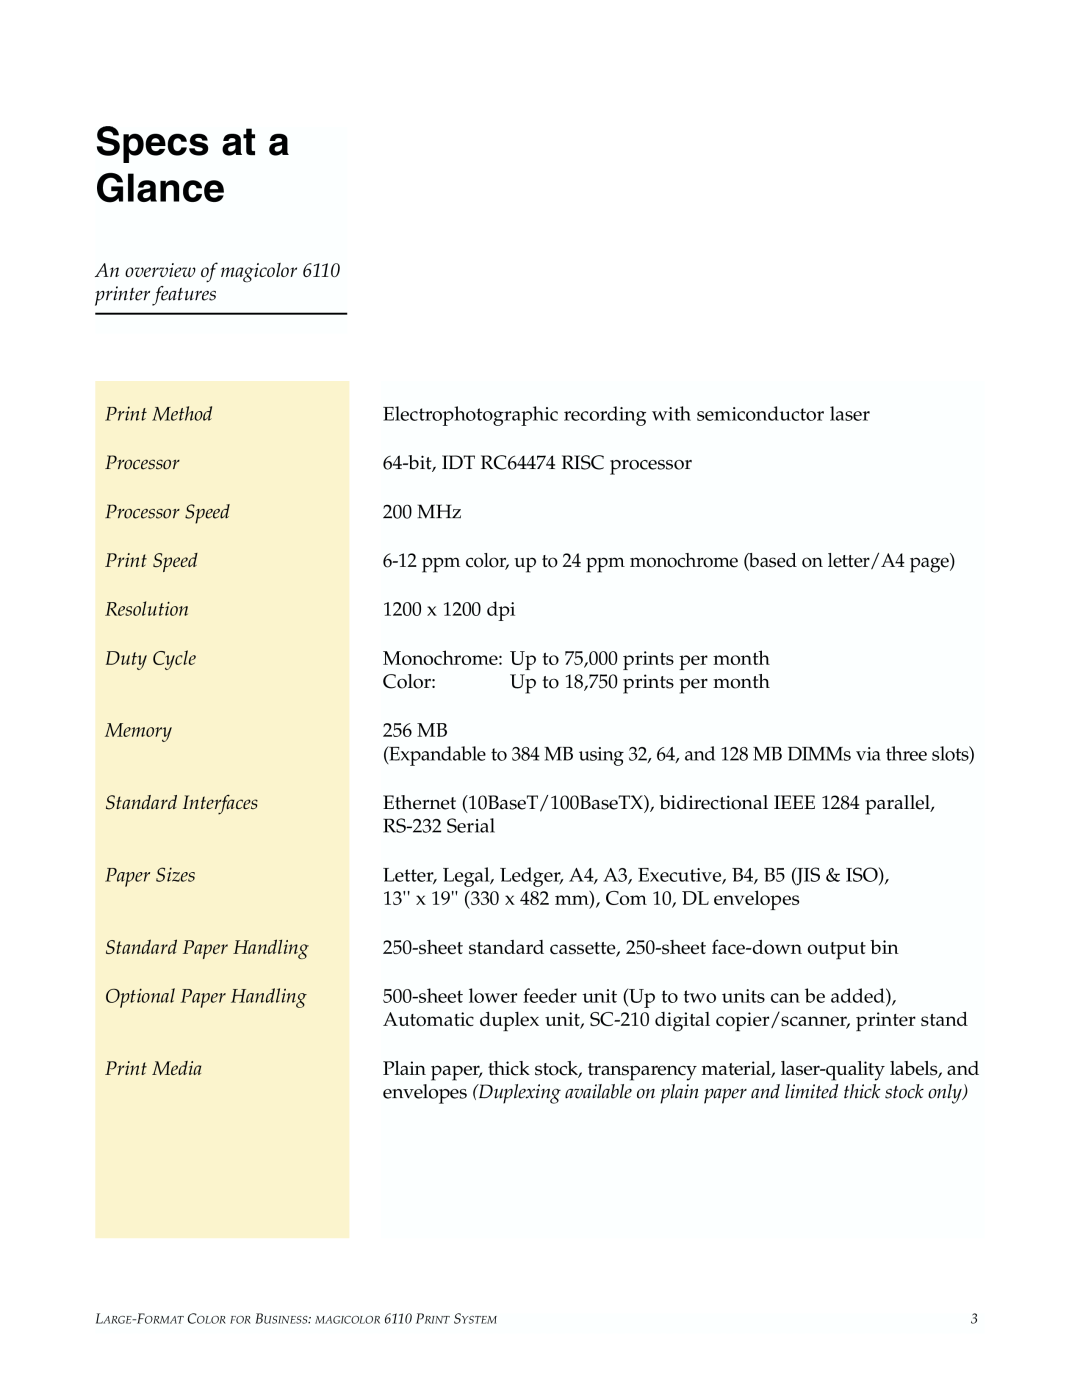 Minolta 6110 manual Specs at a Glance 